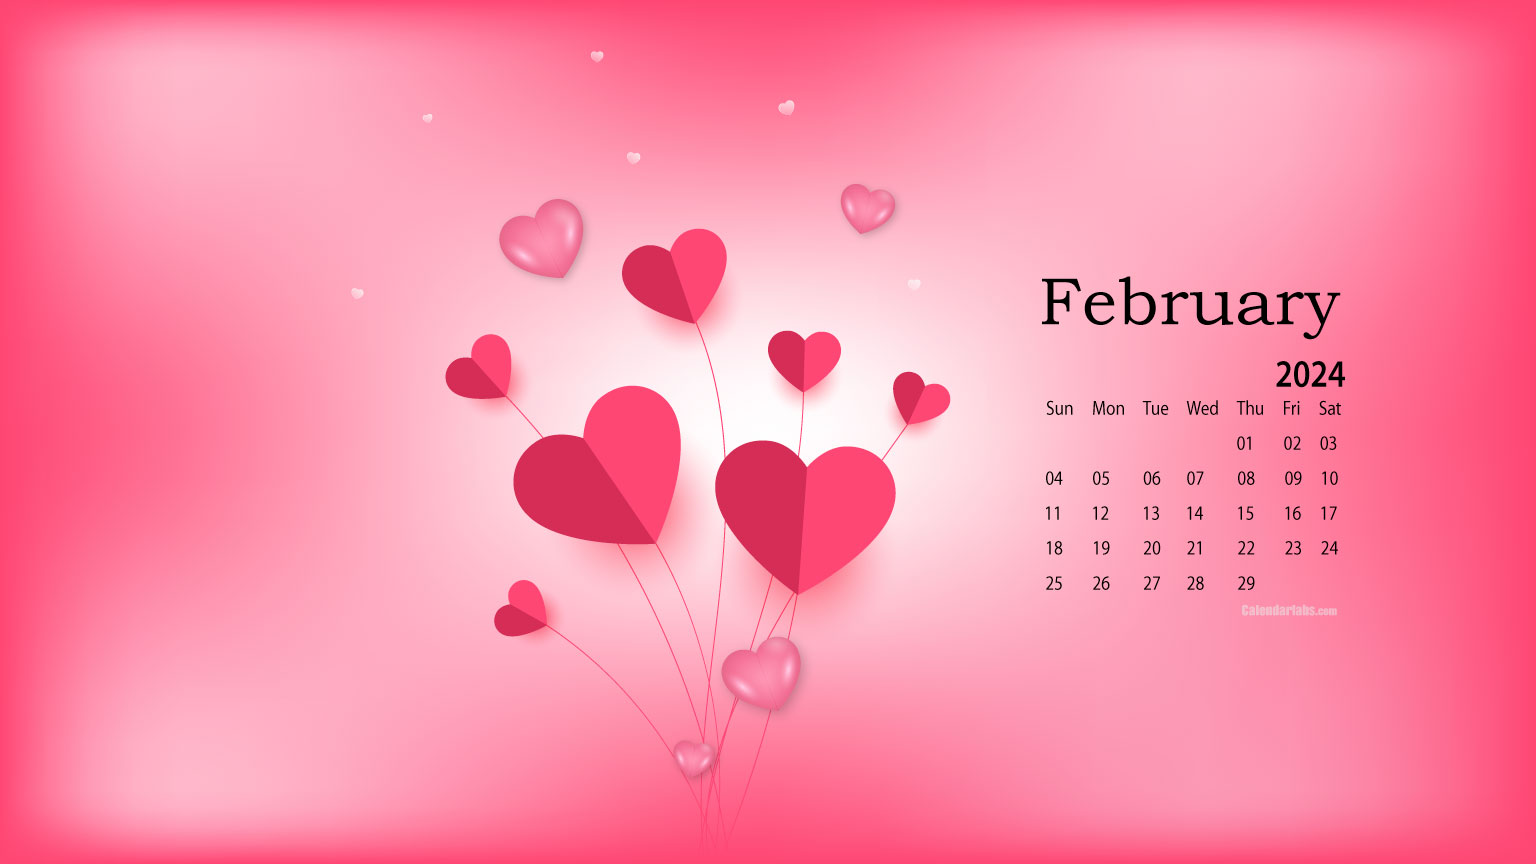 February 2024 Desktop Wallpaper Calendar CalendarLabs